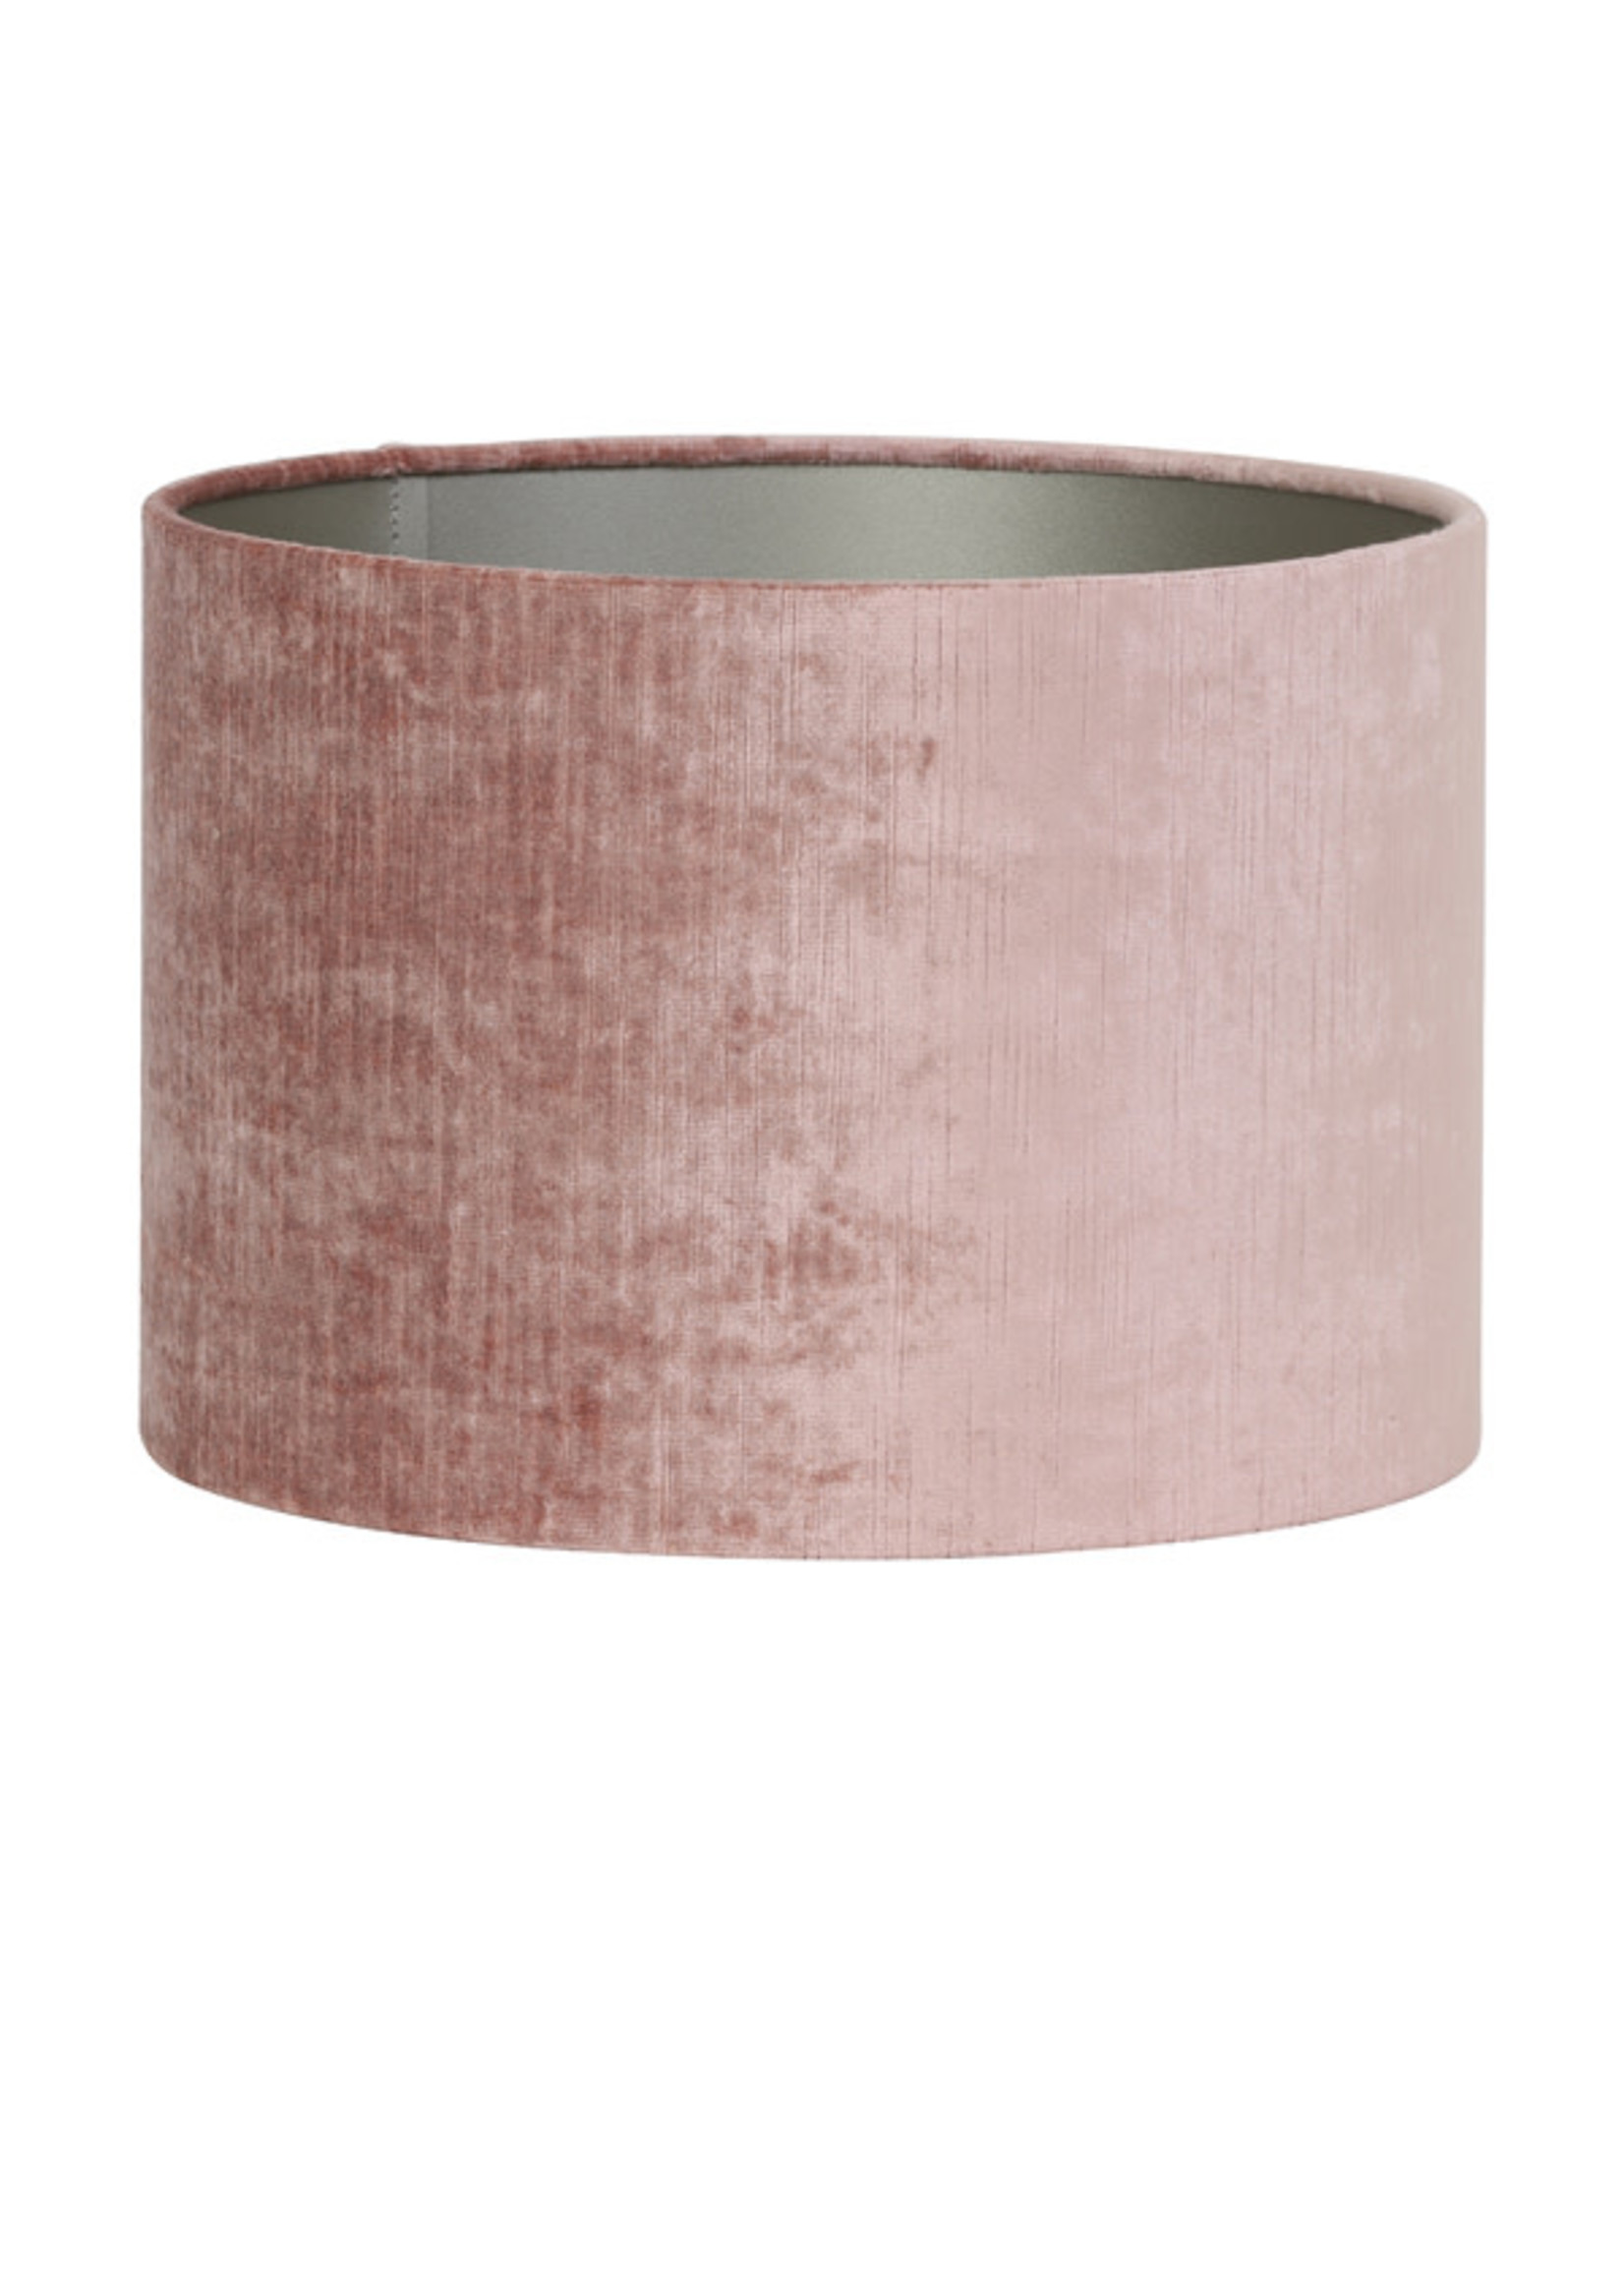 Light & Living Kap cilinder 30-30-21cm gemstone oud roze